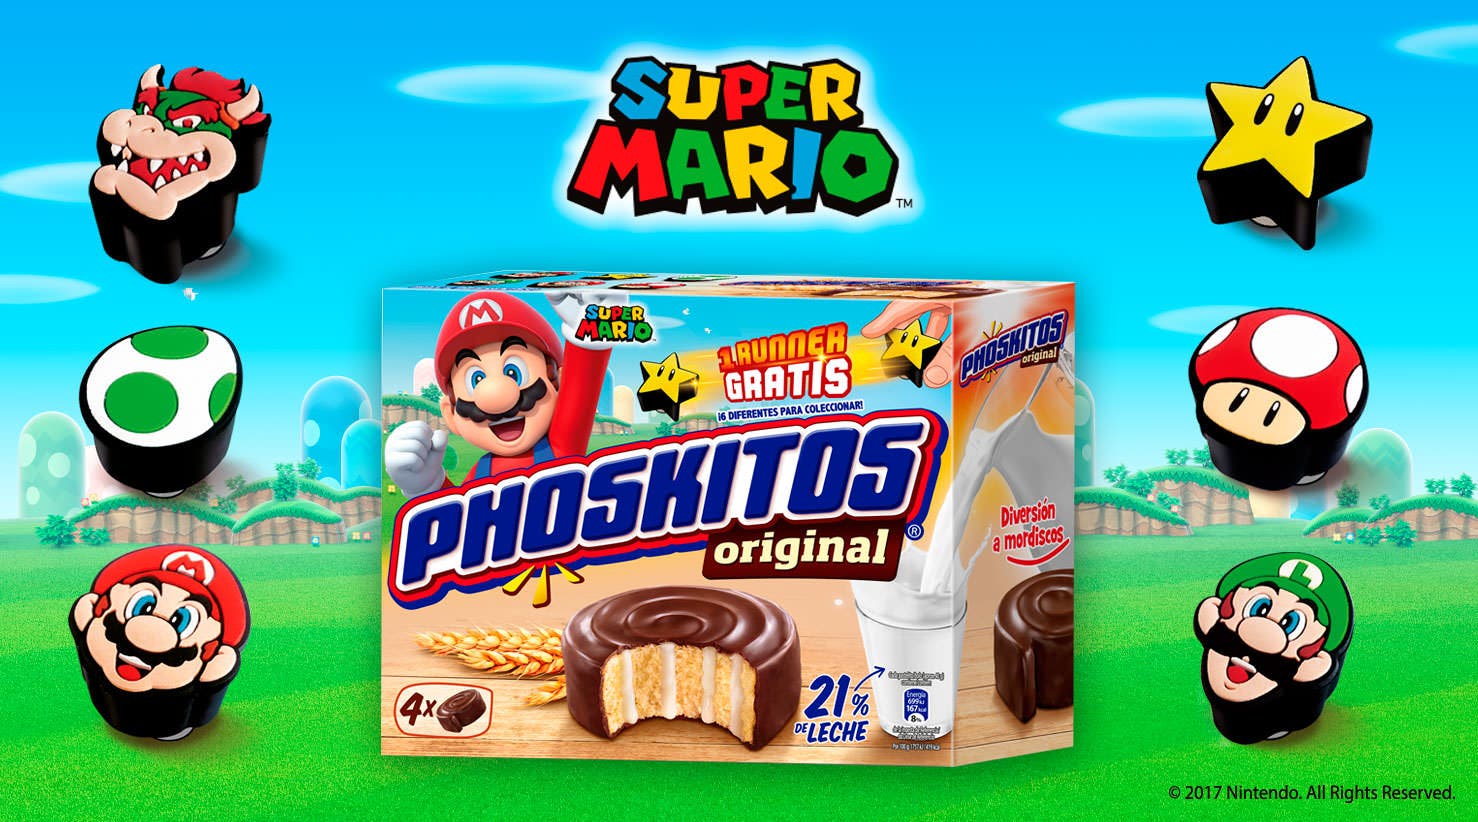 La última promoción de Phoskitos permite hacernos con runners de Super Mario